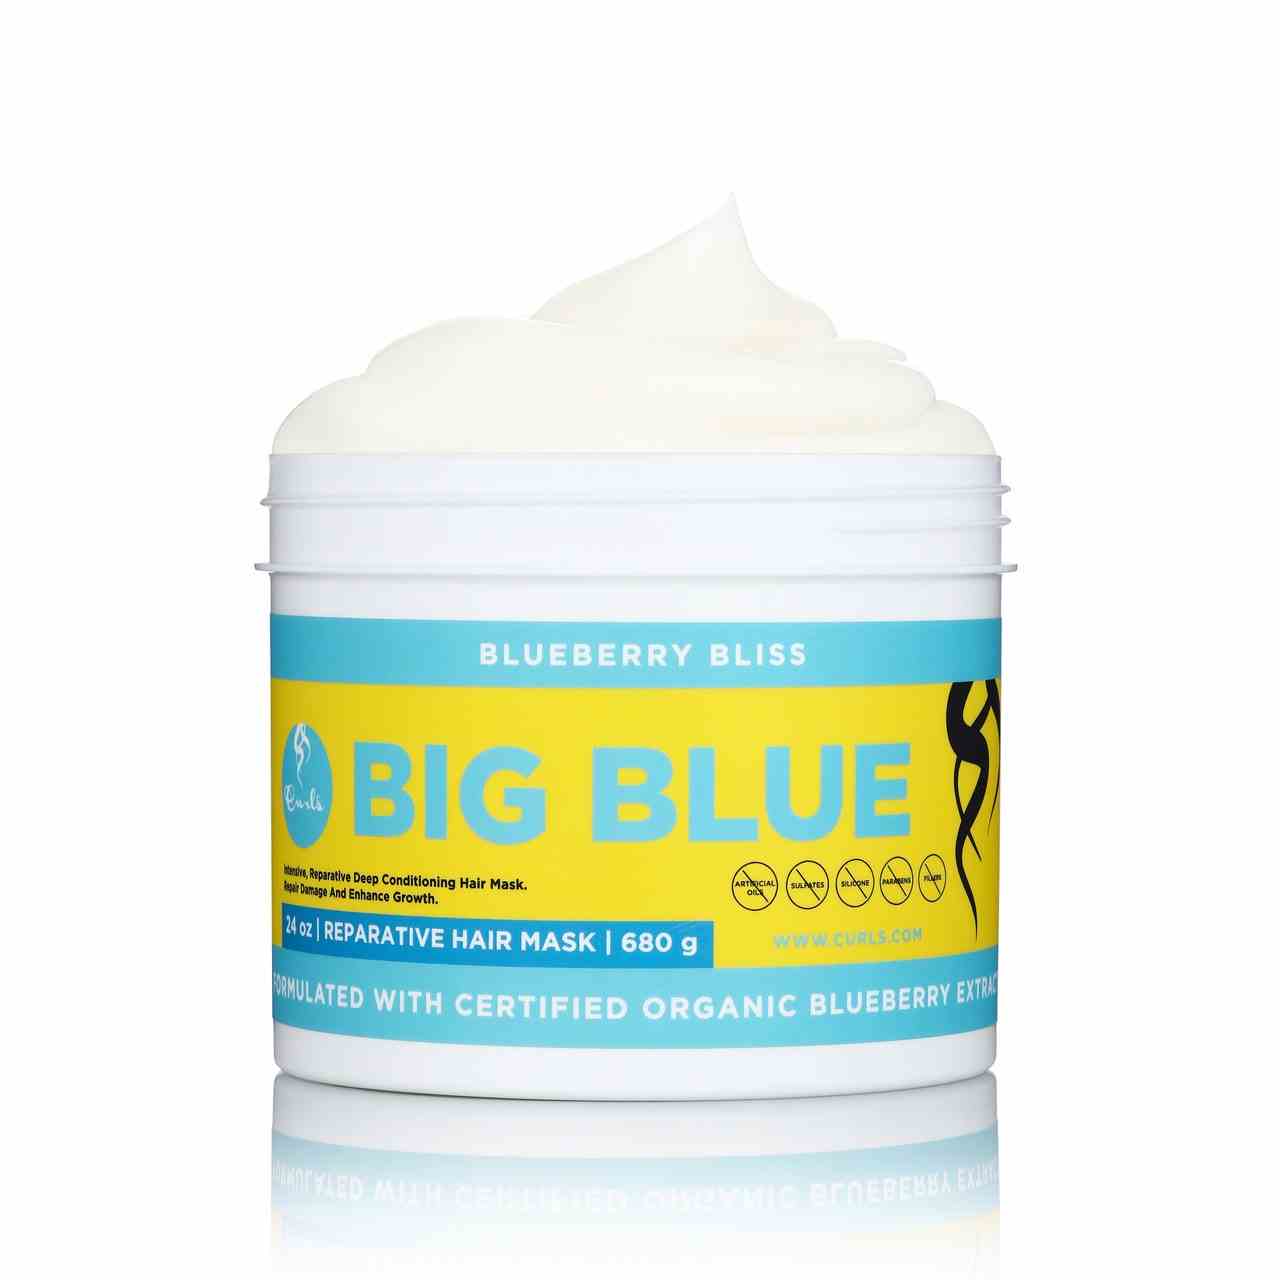 CURLS Big Blue Blueberry Bliss Reparative Haarmaske auf weißem Hintergrund